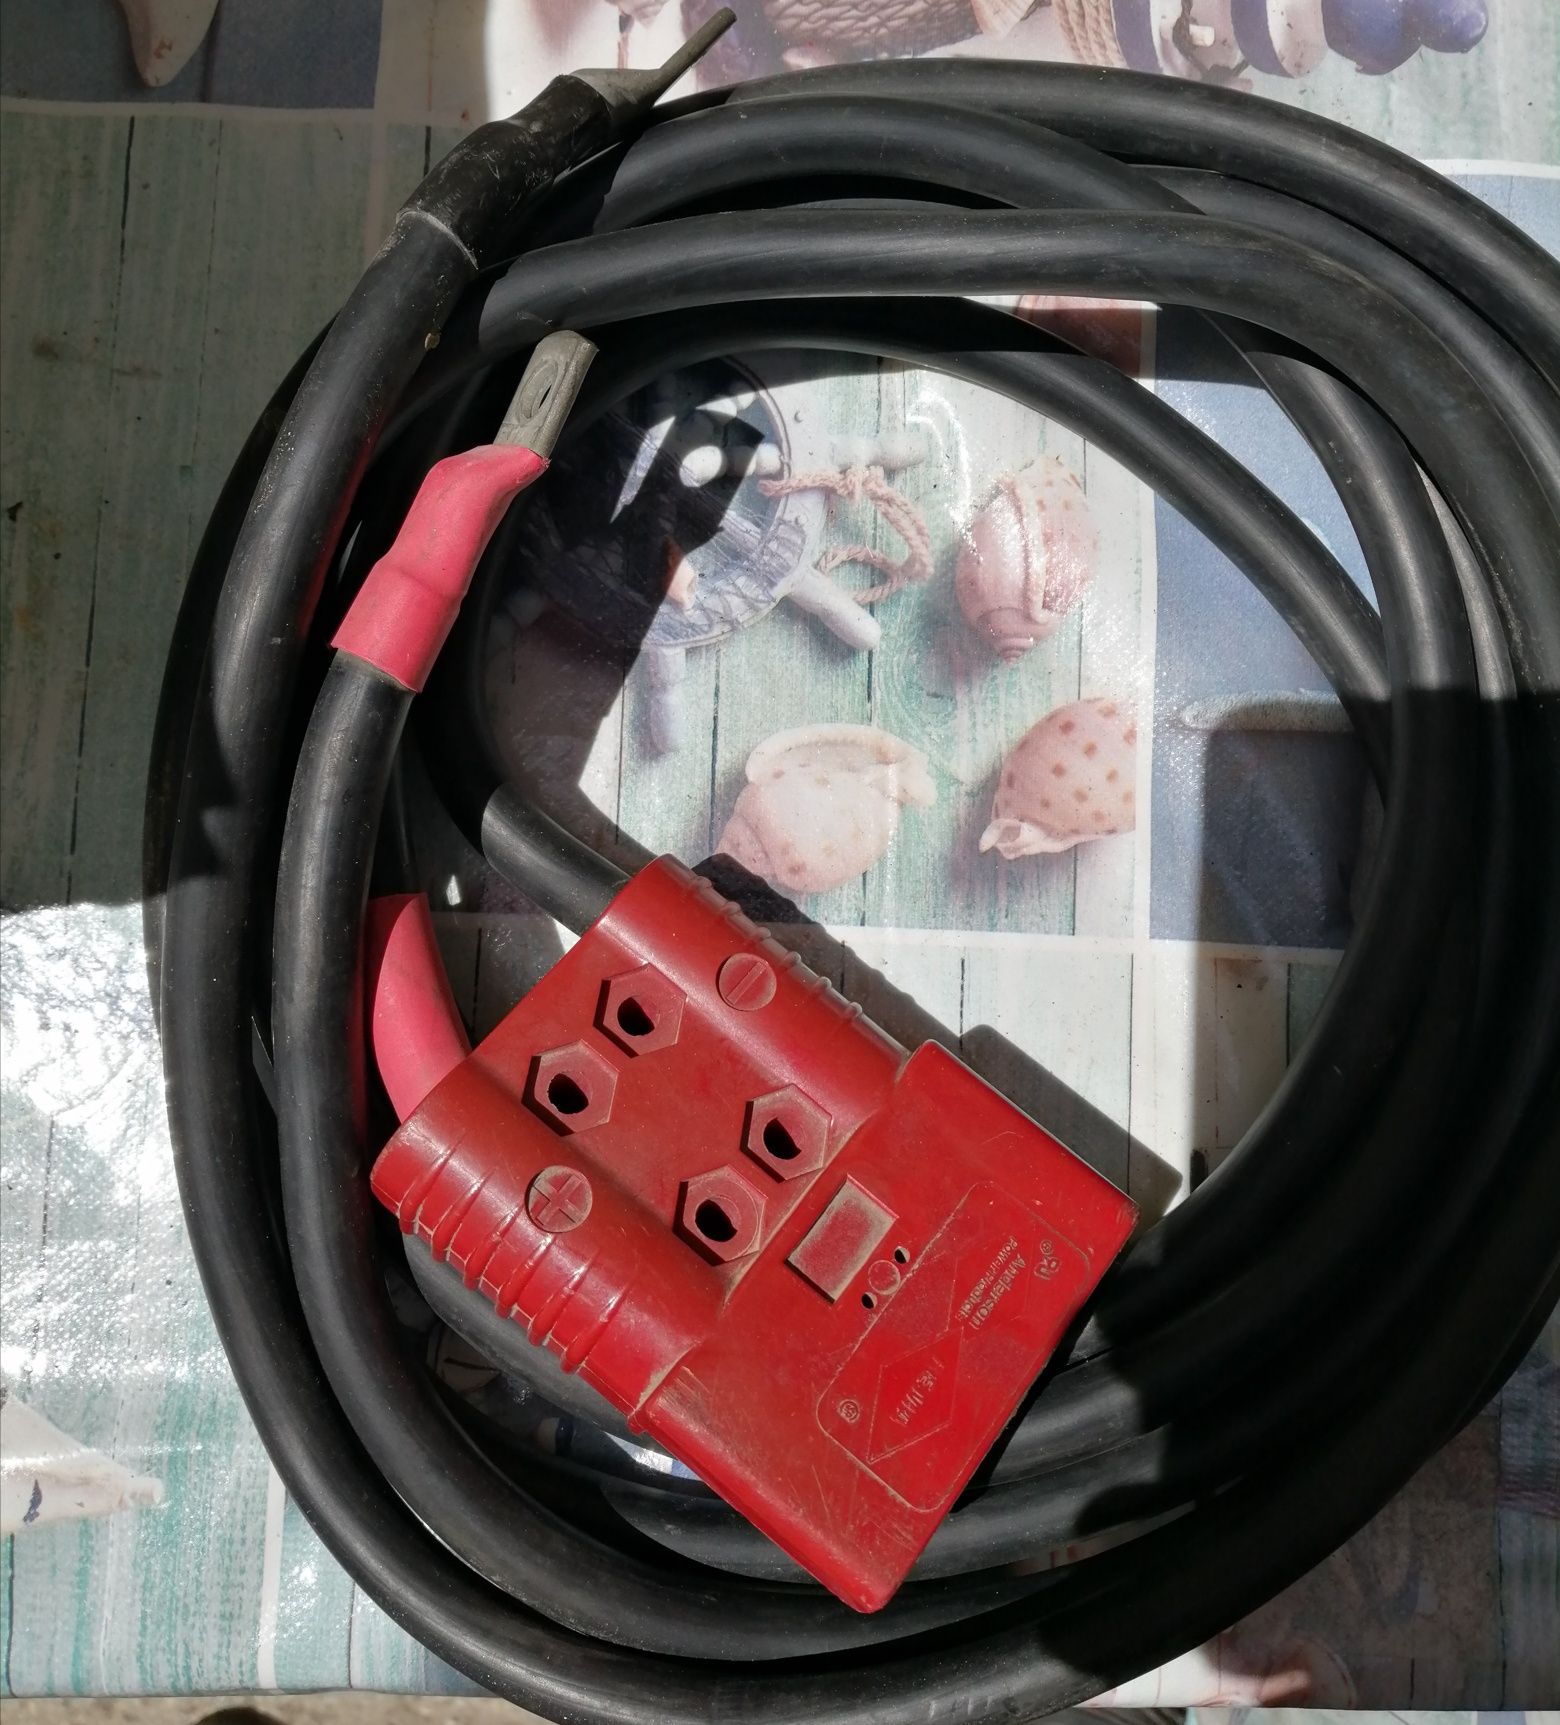 Cablu Profesional gros conector baterie Anderson Power Rema eec 86/663